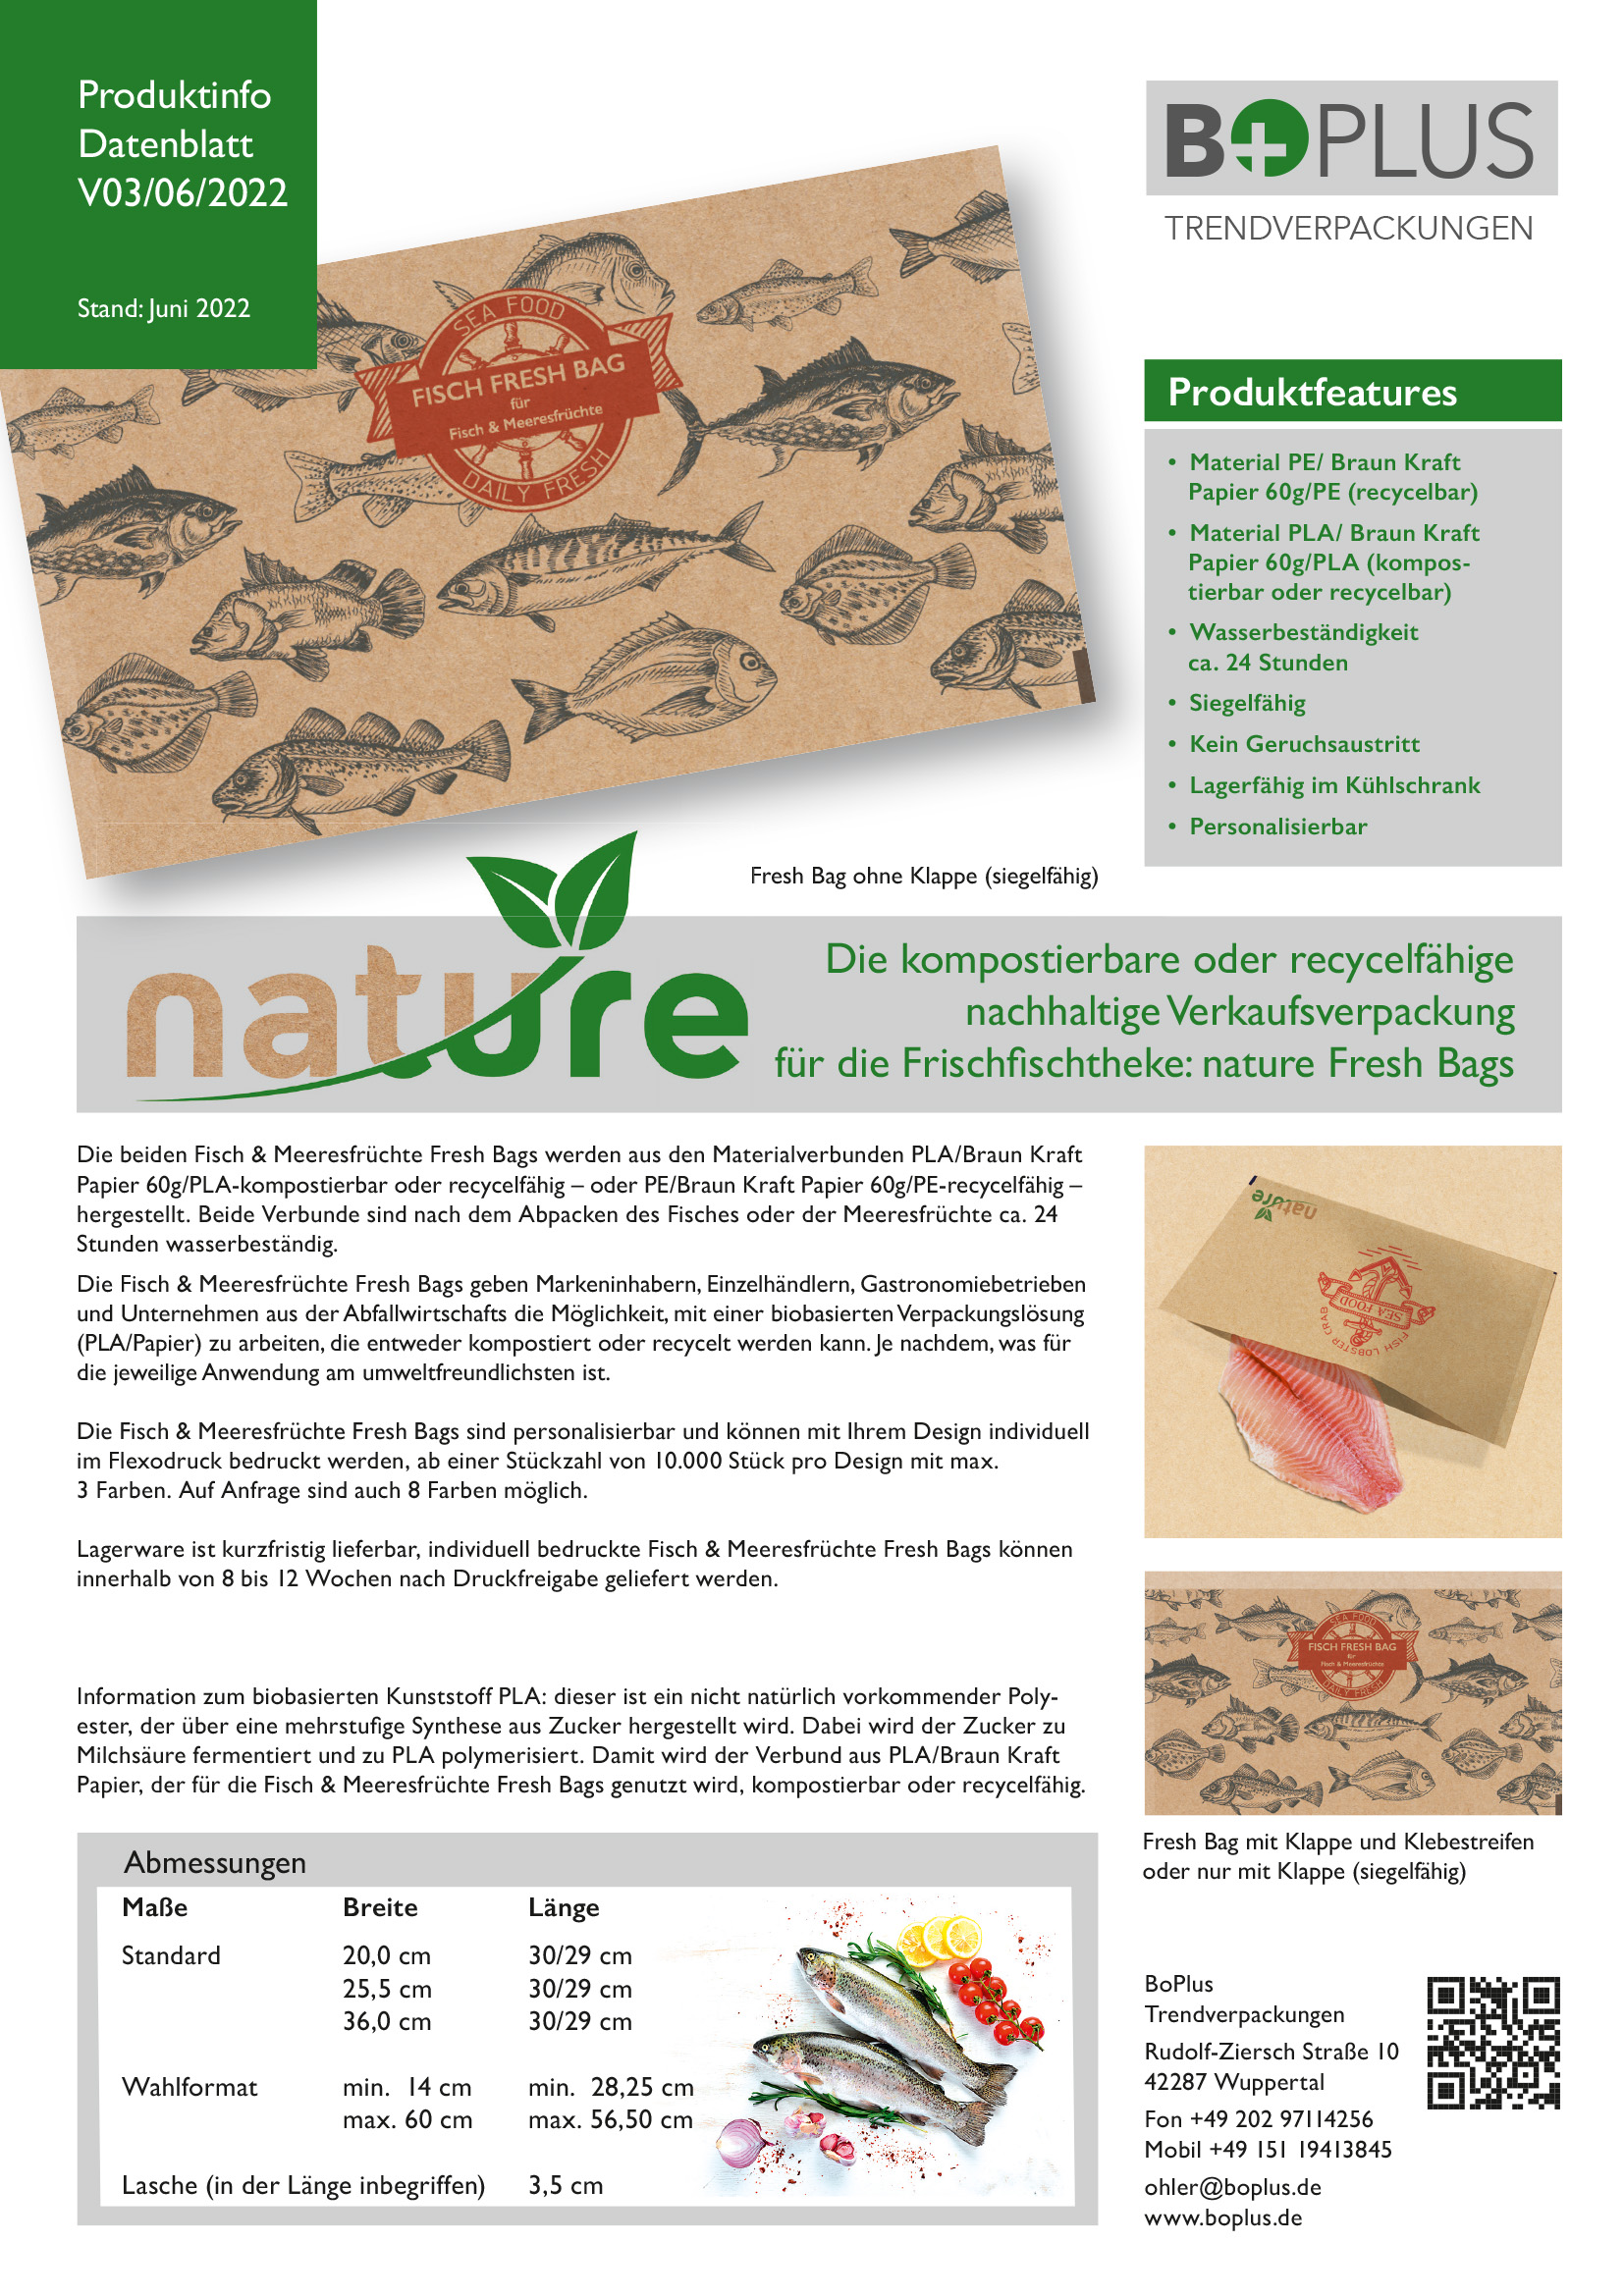 BOplus nature fresh bags Produktinfo V03 06 2022